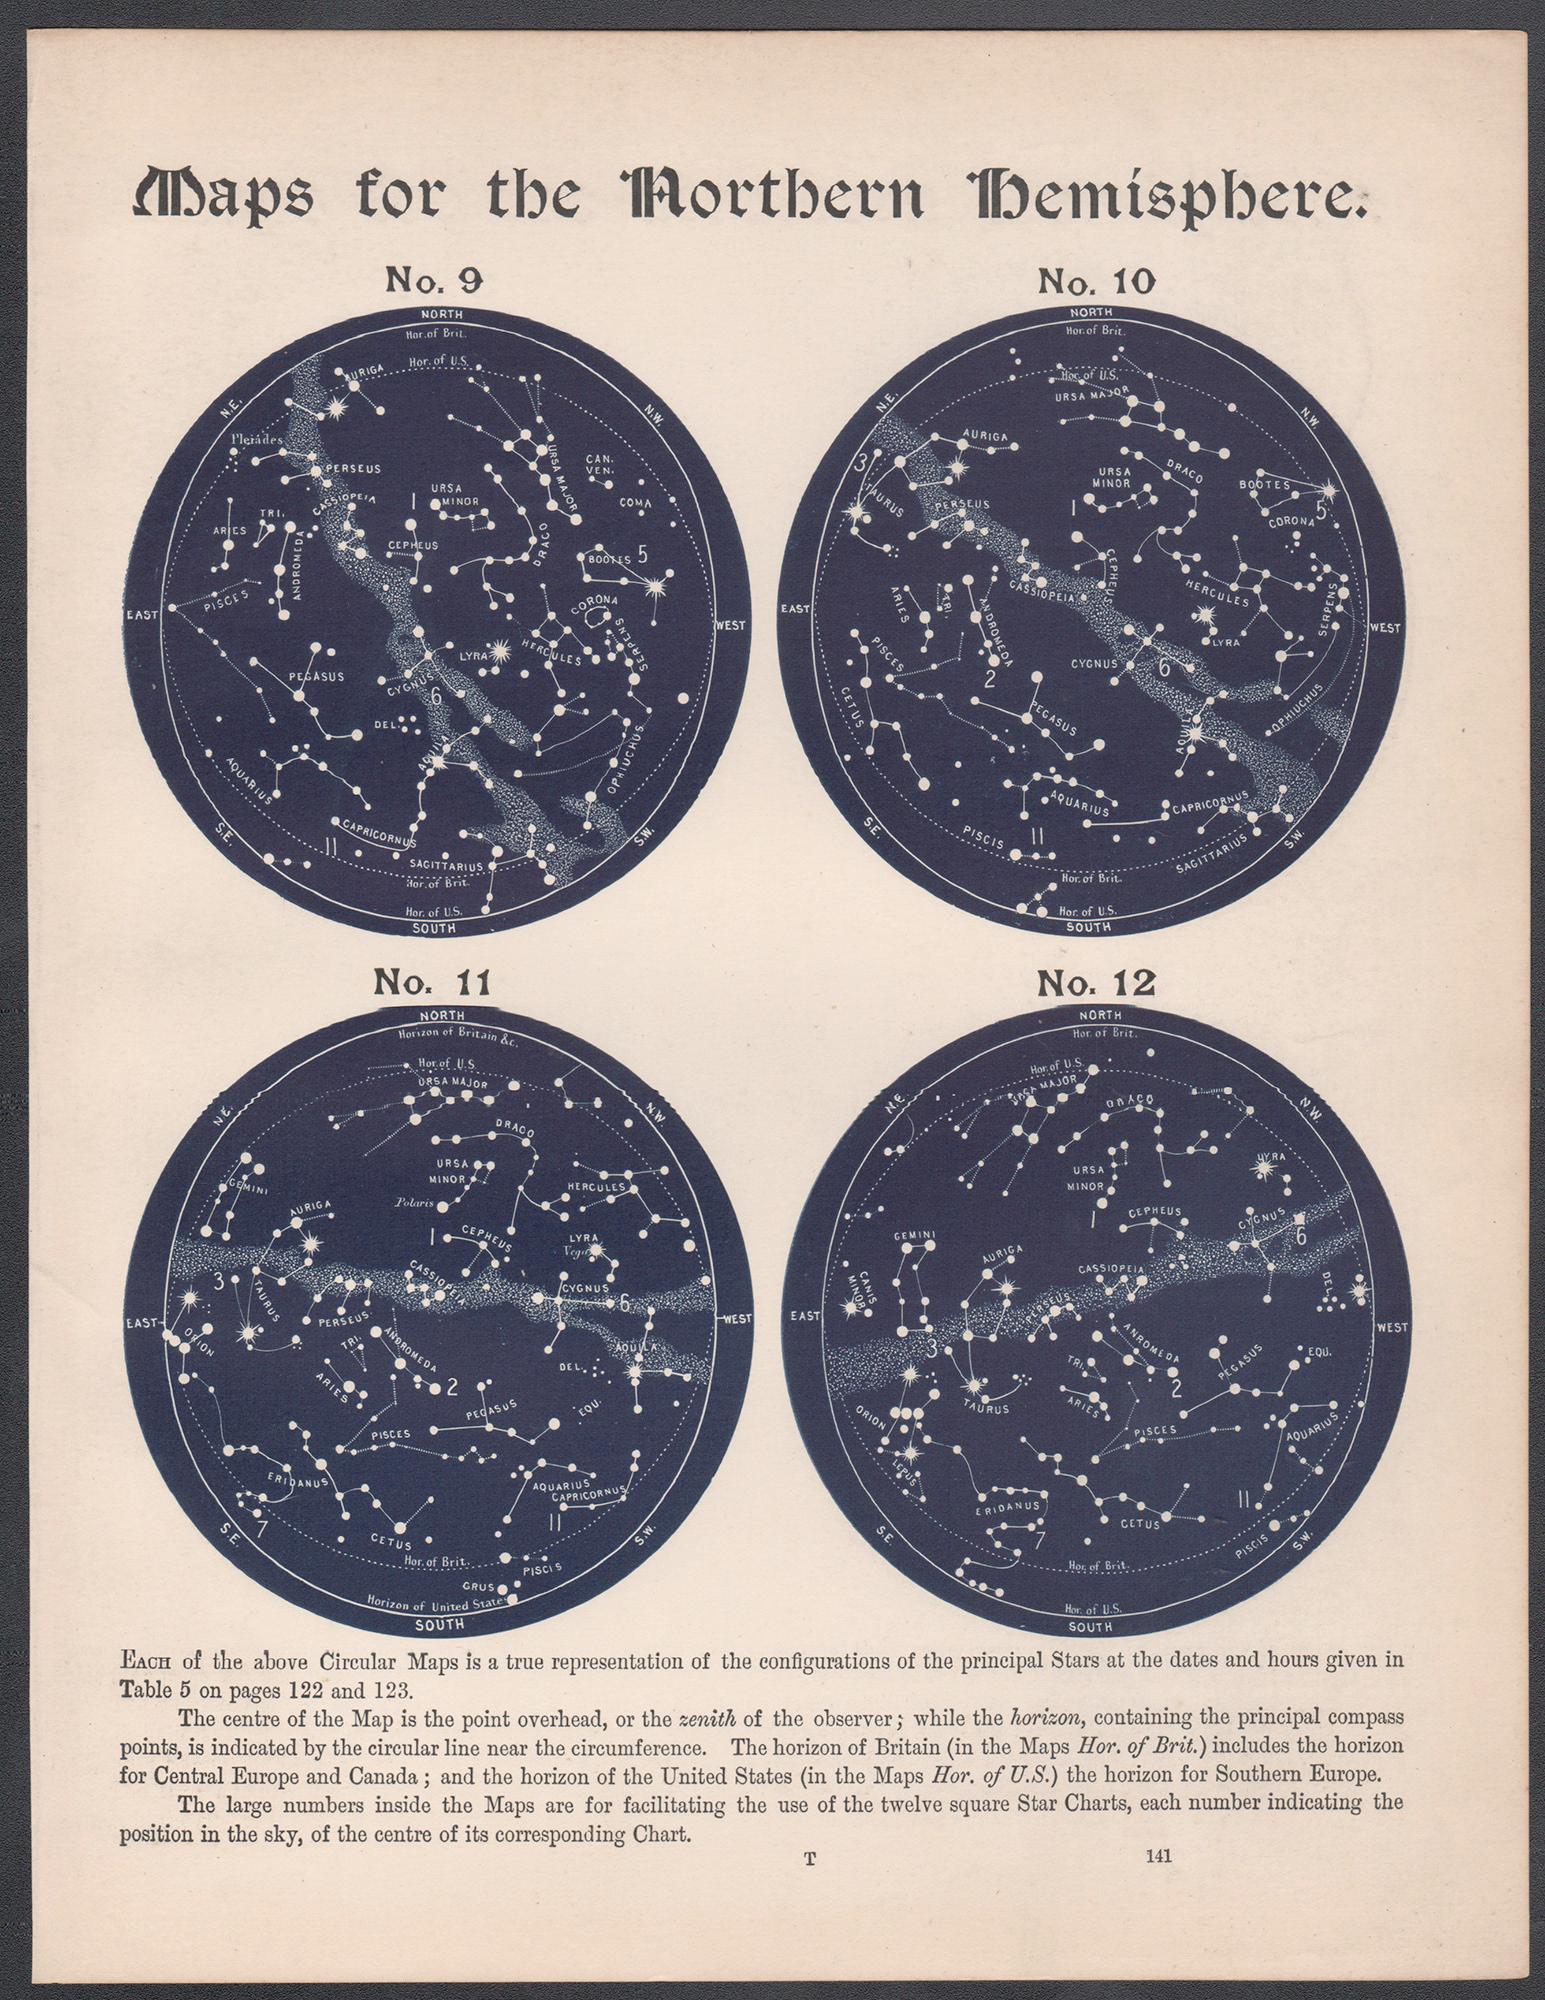 Cartes de l'hémisphère nord. Antiquité - Astronomie - Gravure sur constellation d'étoiles - Print de William Peck